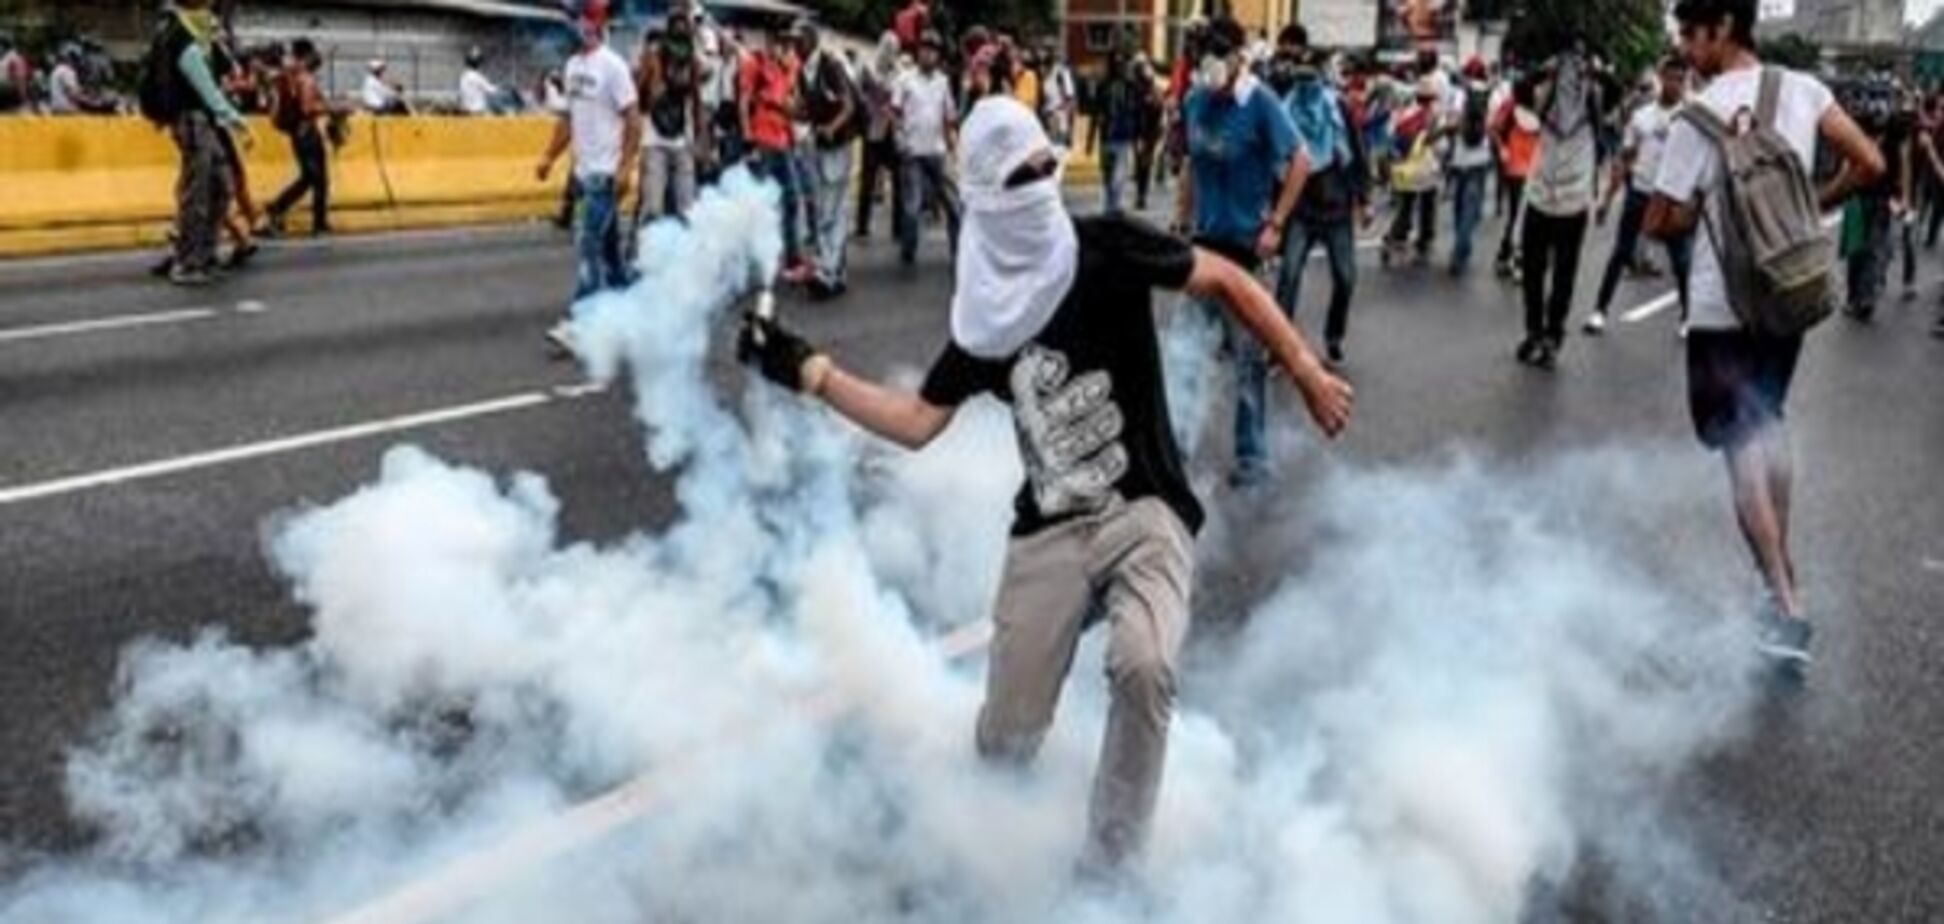 Кількість жертв від початку протестів у Венесуелі зросла до 20